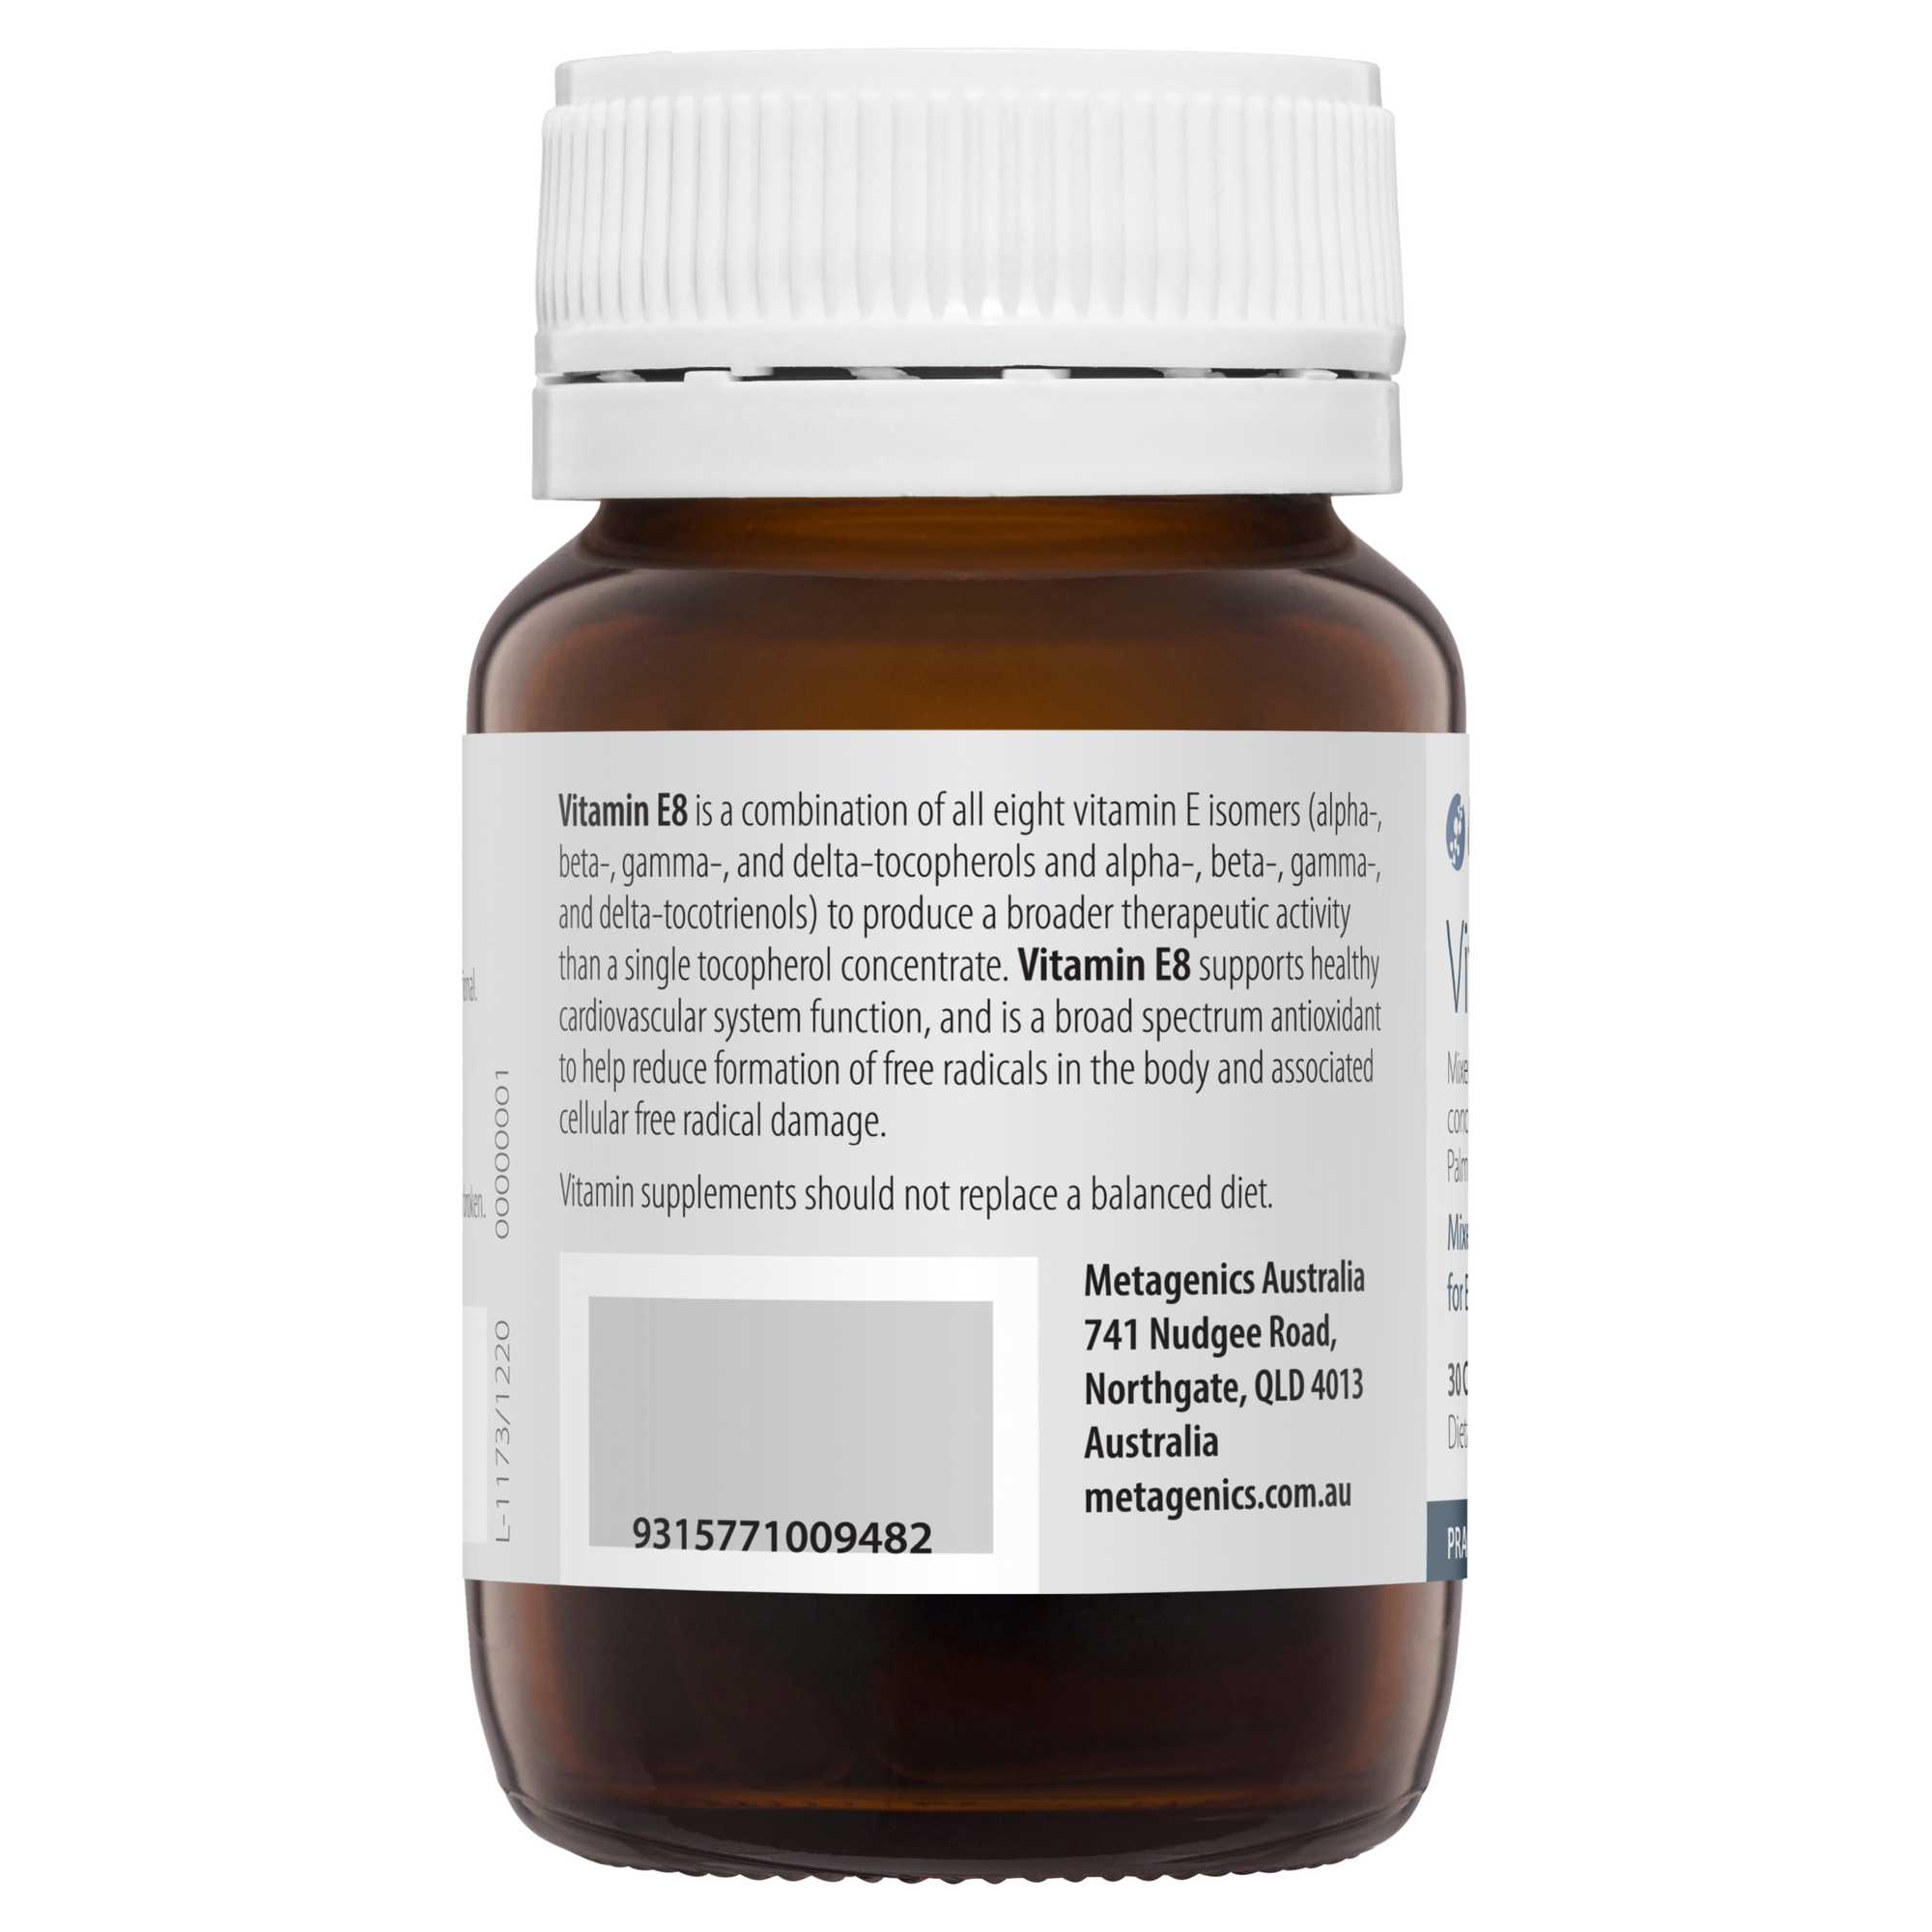 Metagenics Vitamin E8 30 Capsules